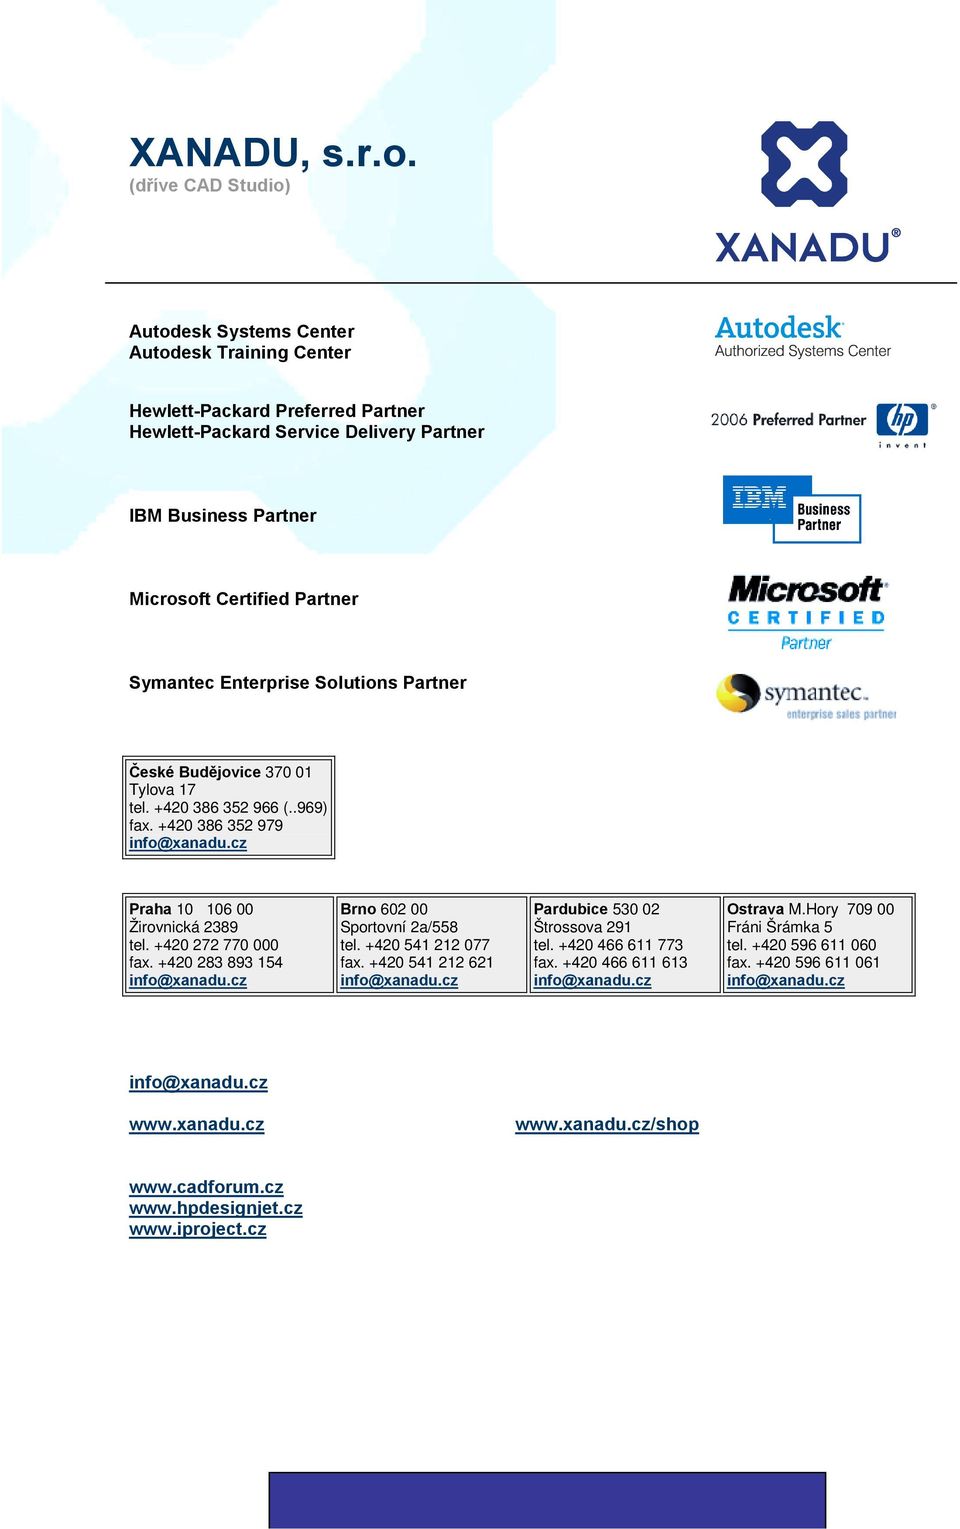 Certified Partner Symantec Enterprise Solutions Partner České Budějovice 370 01 Tylova 17 tel. +420 386 352 966 (..969) fax. +420 386 352 979 Praha 10 106 00 Žirovnická 2389 tel.